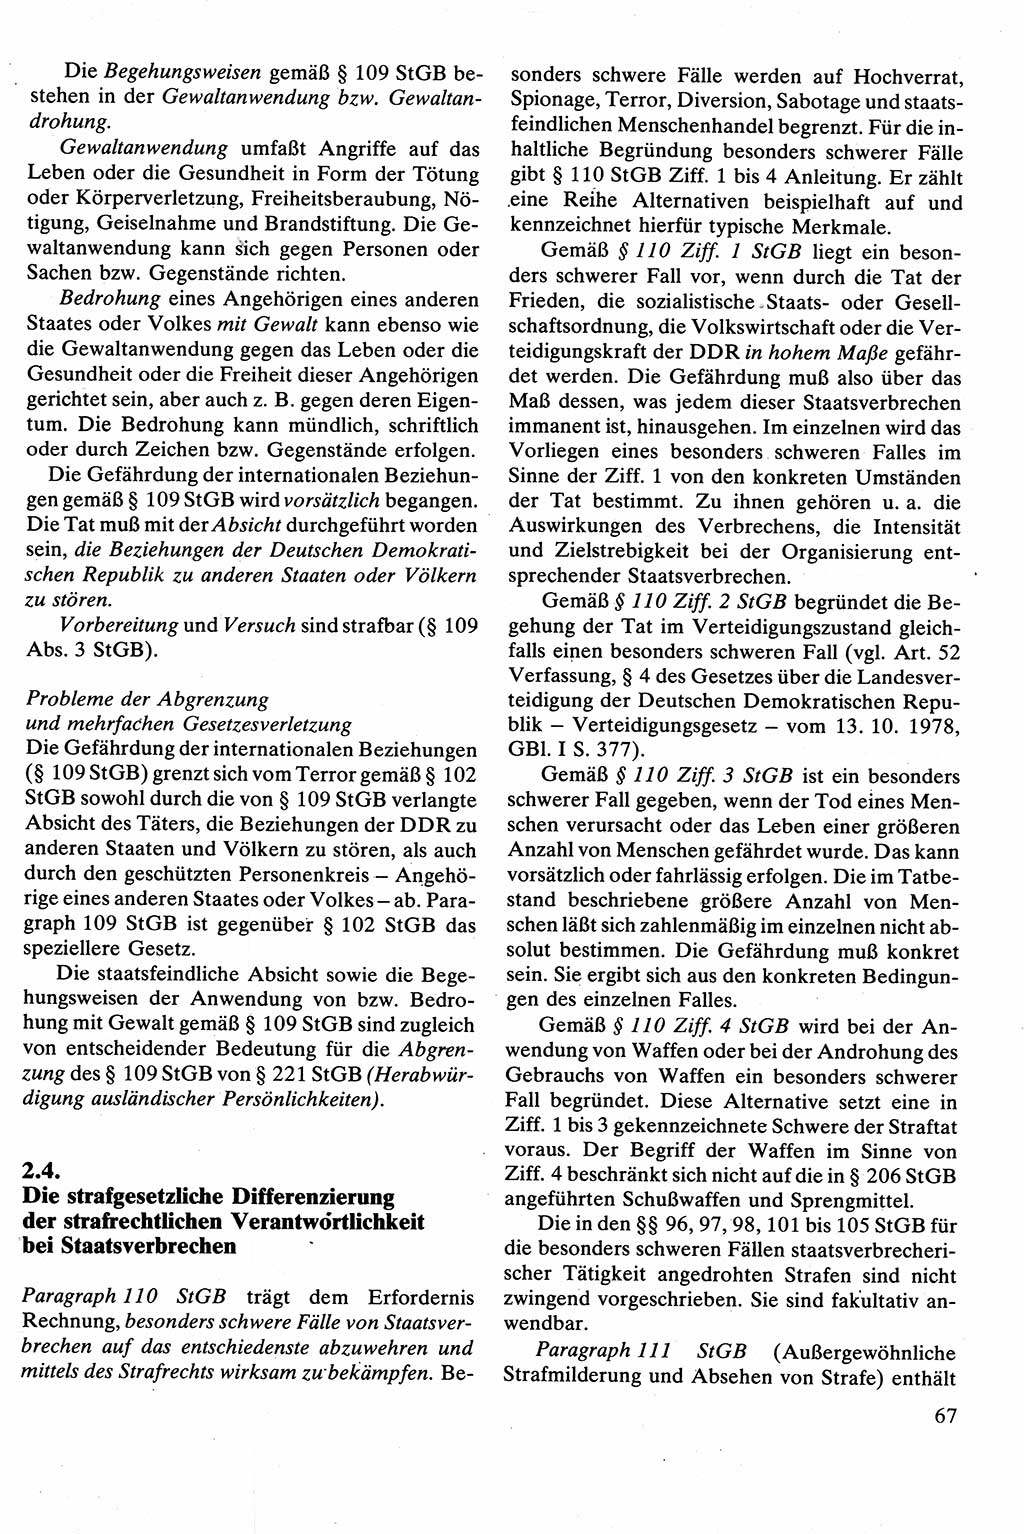 Strafrecht [Deutsche Demokratische Republik (DDR)], Besonderer Teil, Lehrbuch 1981, Seite 67 (Strafr. DDR BT Lb. 1981, S. 67)